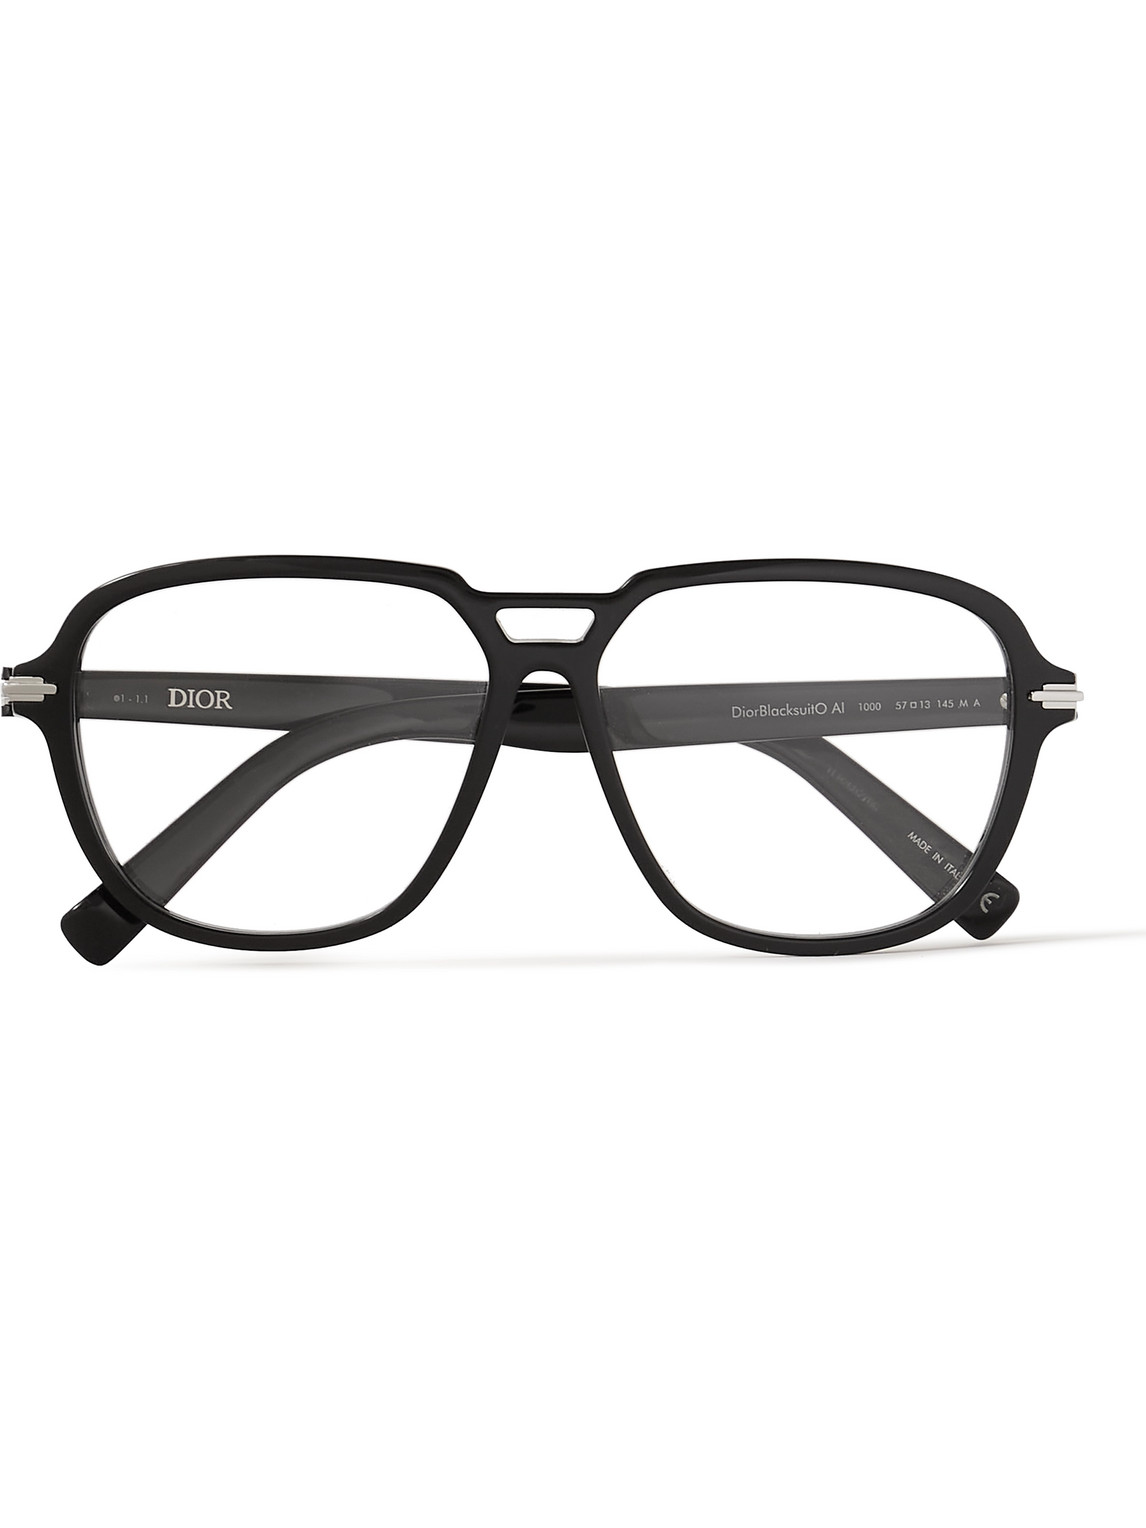 DiorBlackSuitO AI Aviator-Style Acetate Optical Glasses